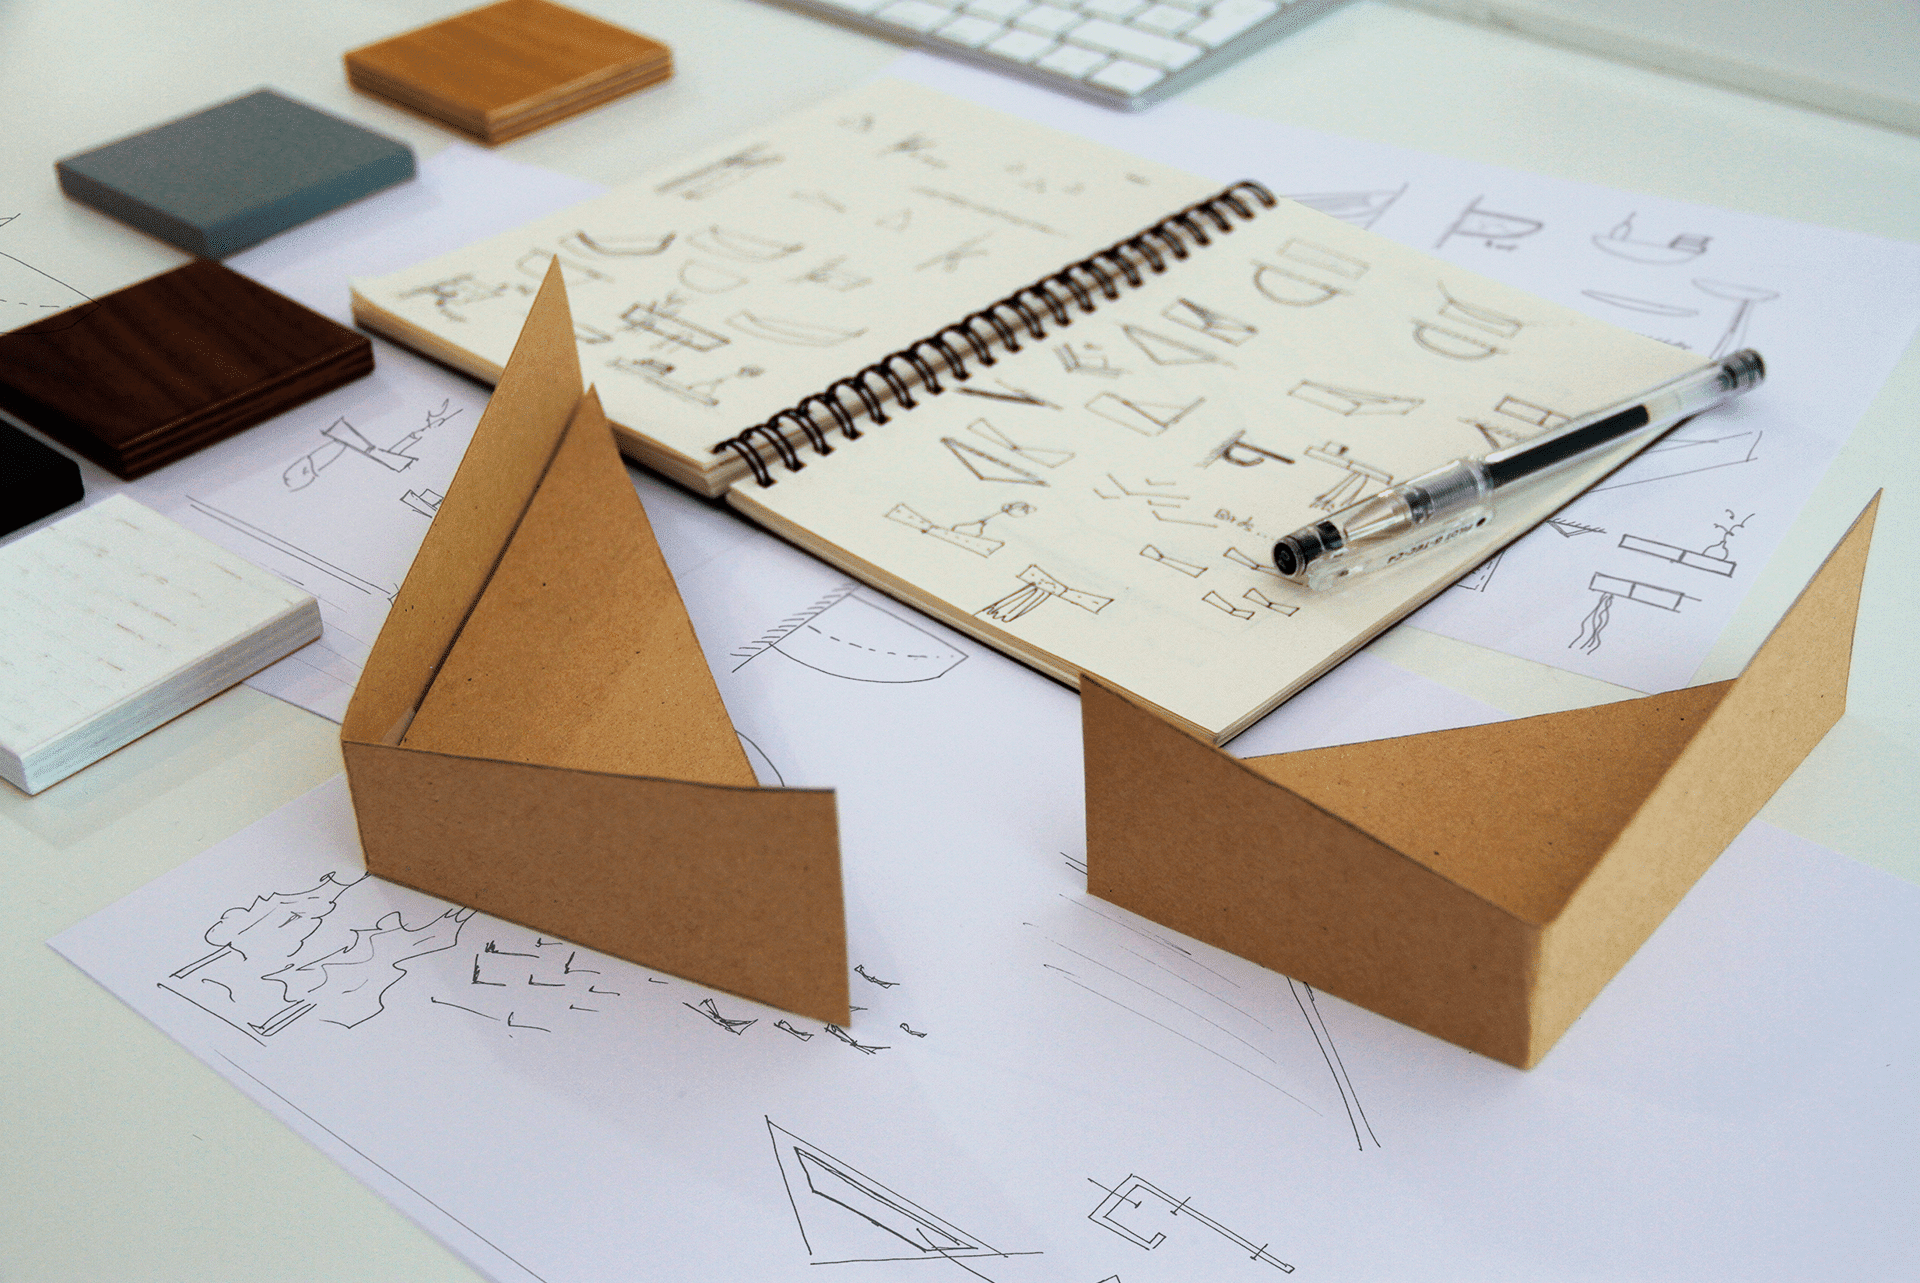 pelican wall shelf prototype sketch industrial design